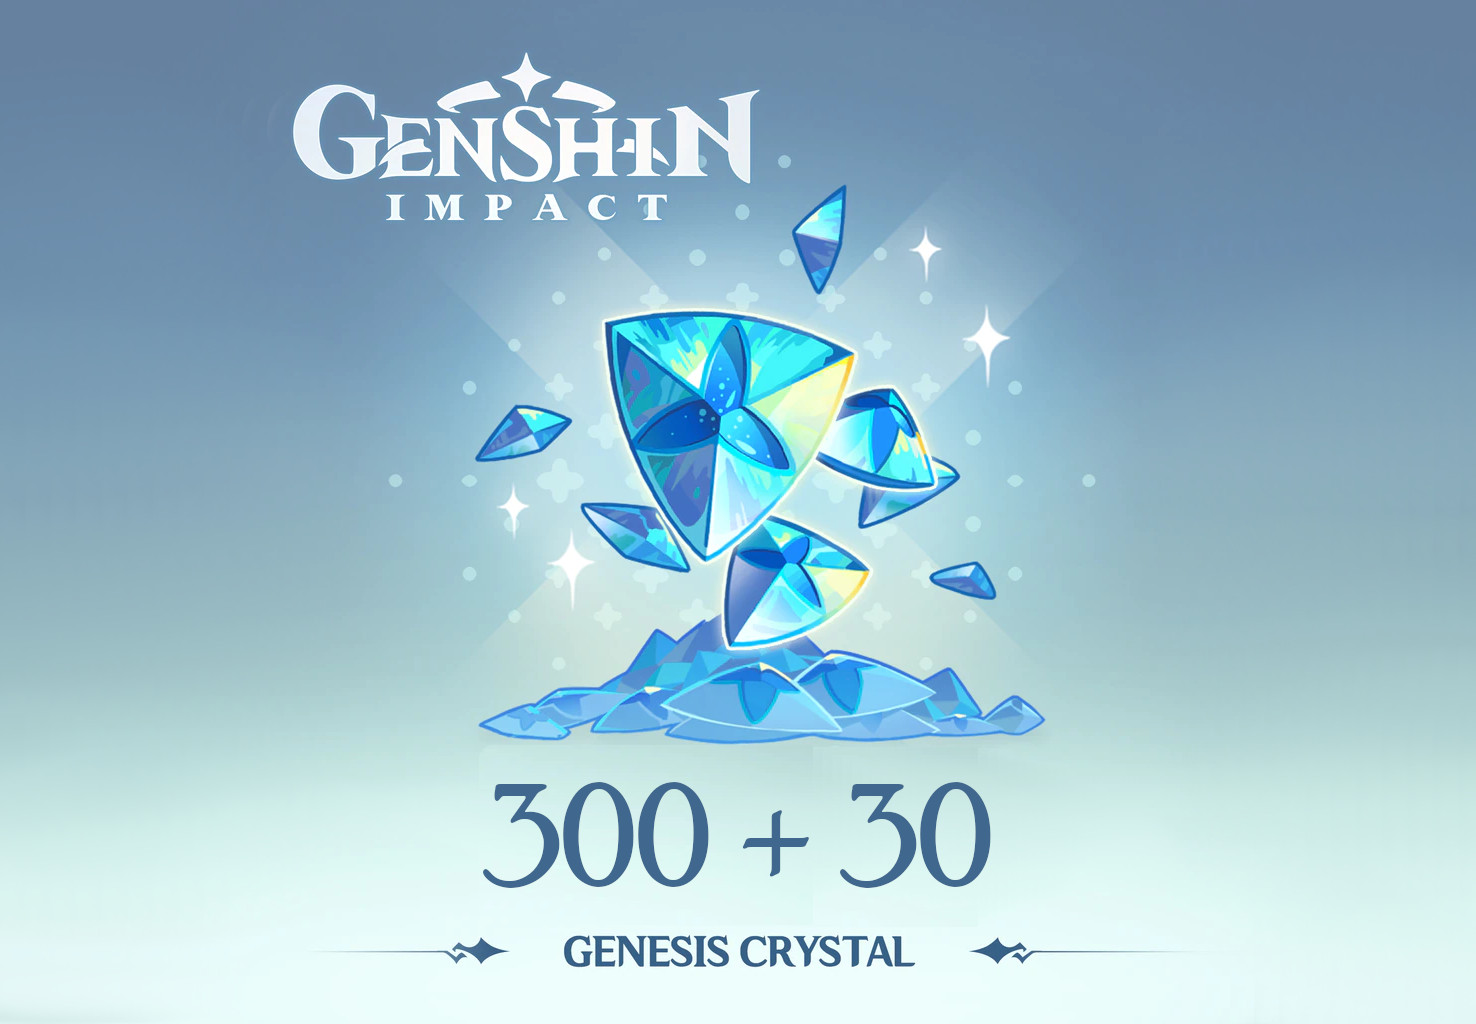 Genshin Impact - 300 + 30 Genesis Crystals Reidos Voucher $5.37